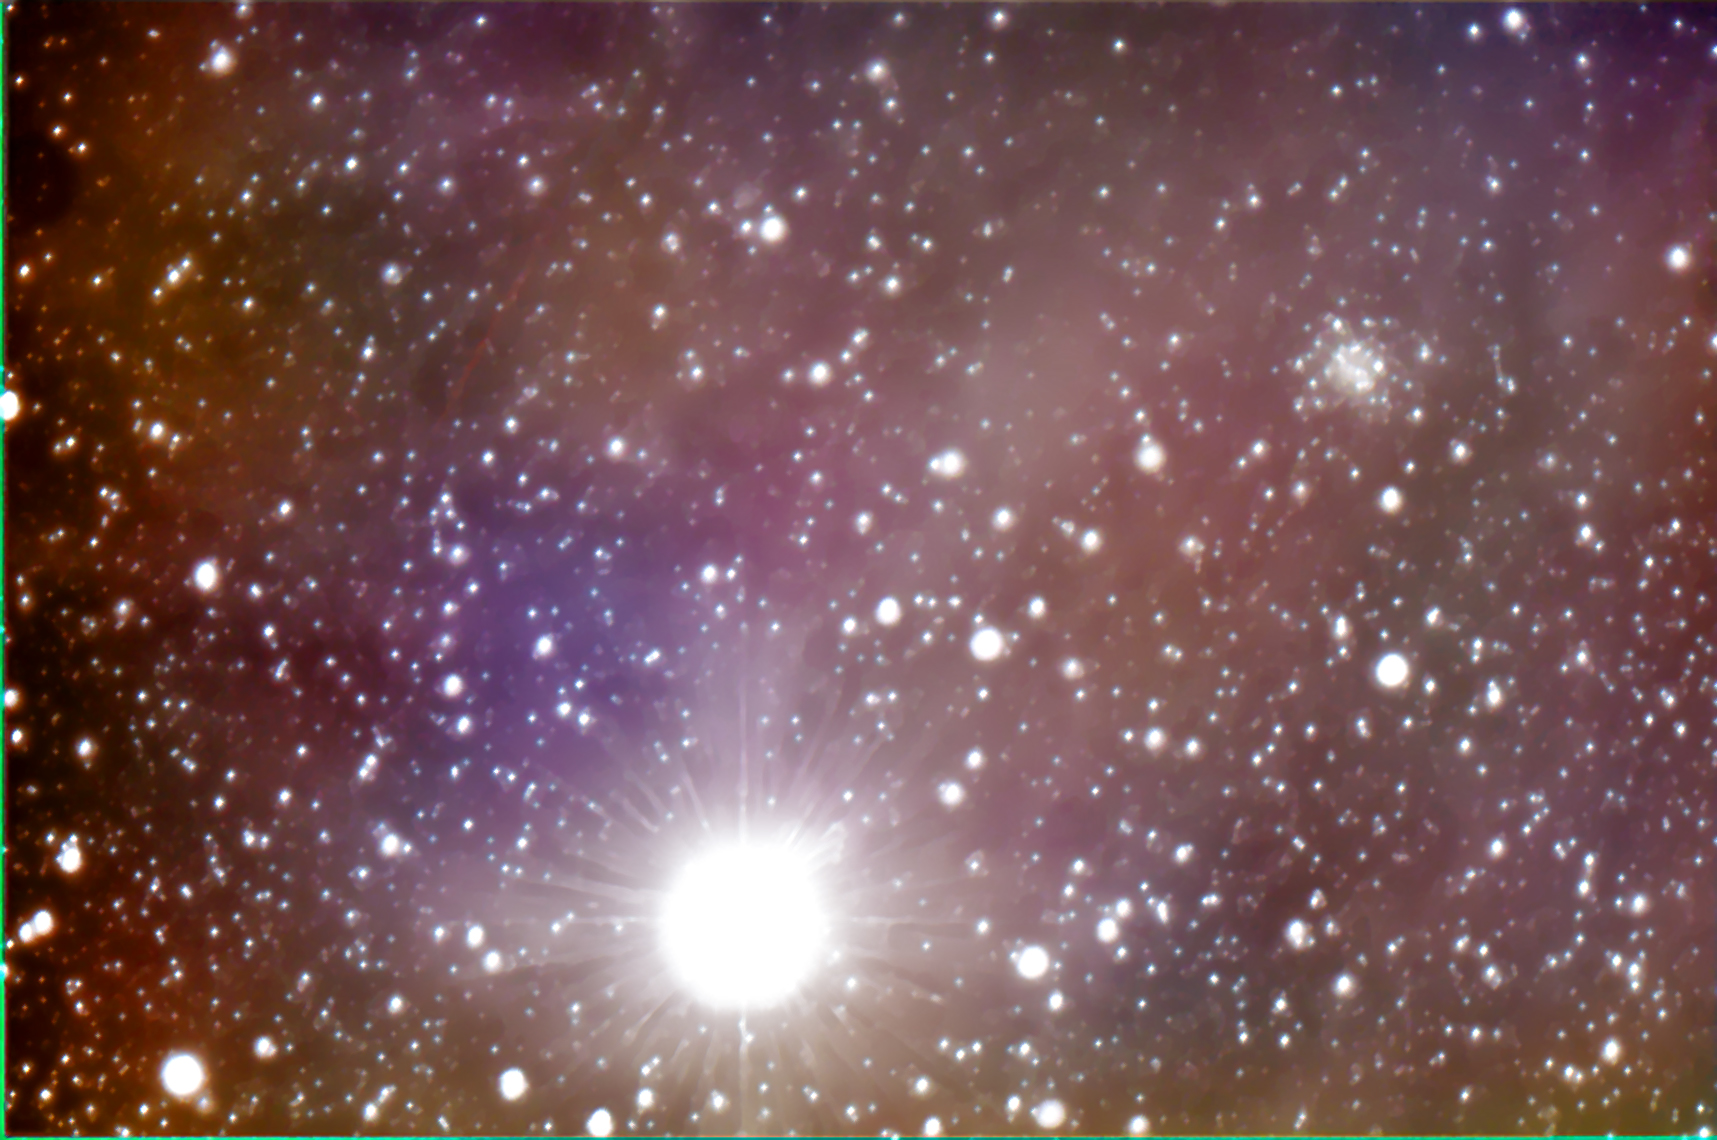 Antares, NGC6144